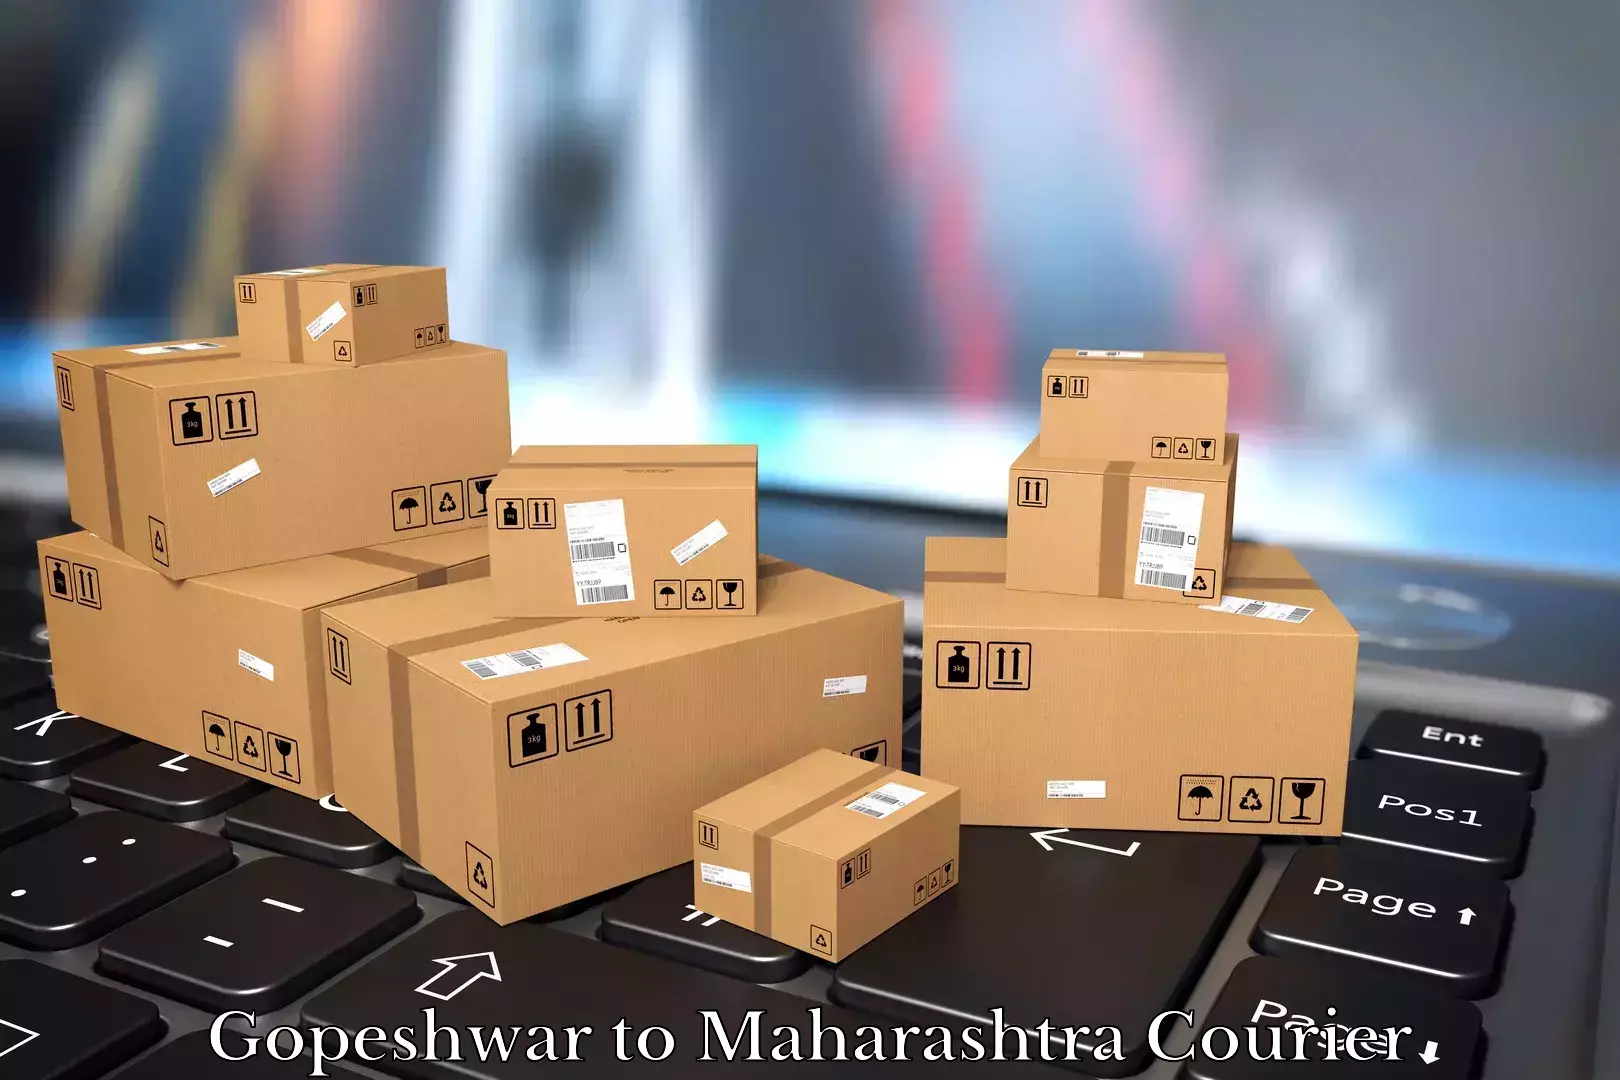 Efficient moving company Gopeshwar to Maharashtra